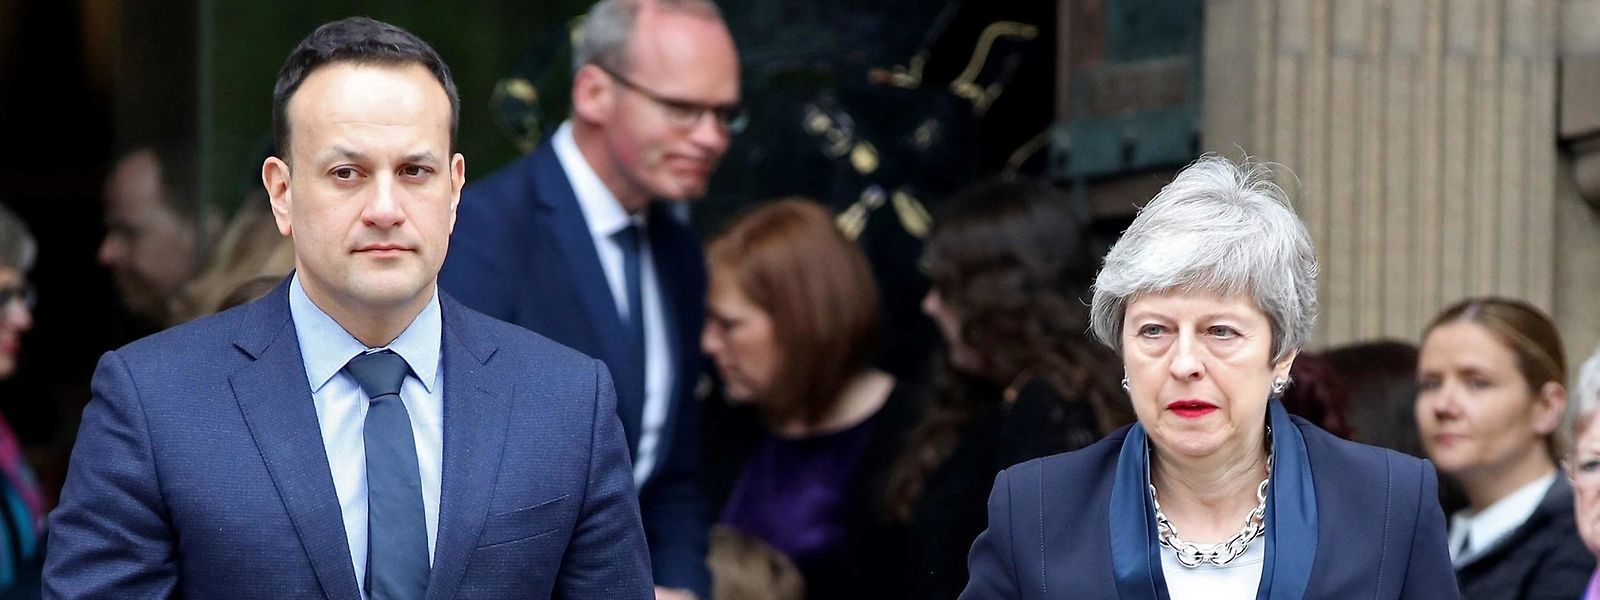 Der irische Premierminister Leo Varadkar und die britische Premierministerin Theresa May besuchten die Beerdigung der im nordirischen Londonderry getöteten Journalistin Lyra McKee.